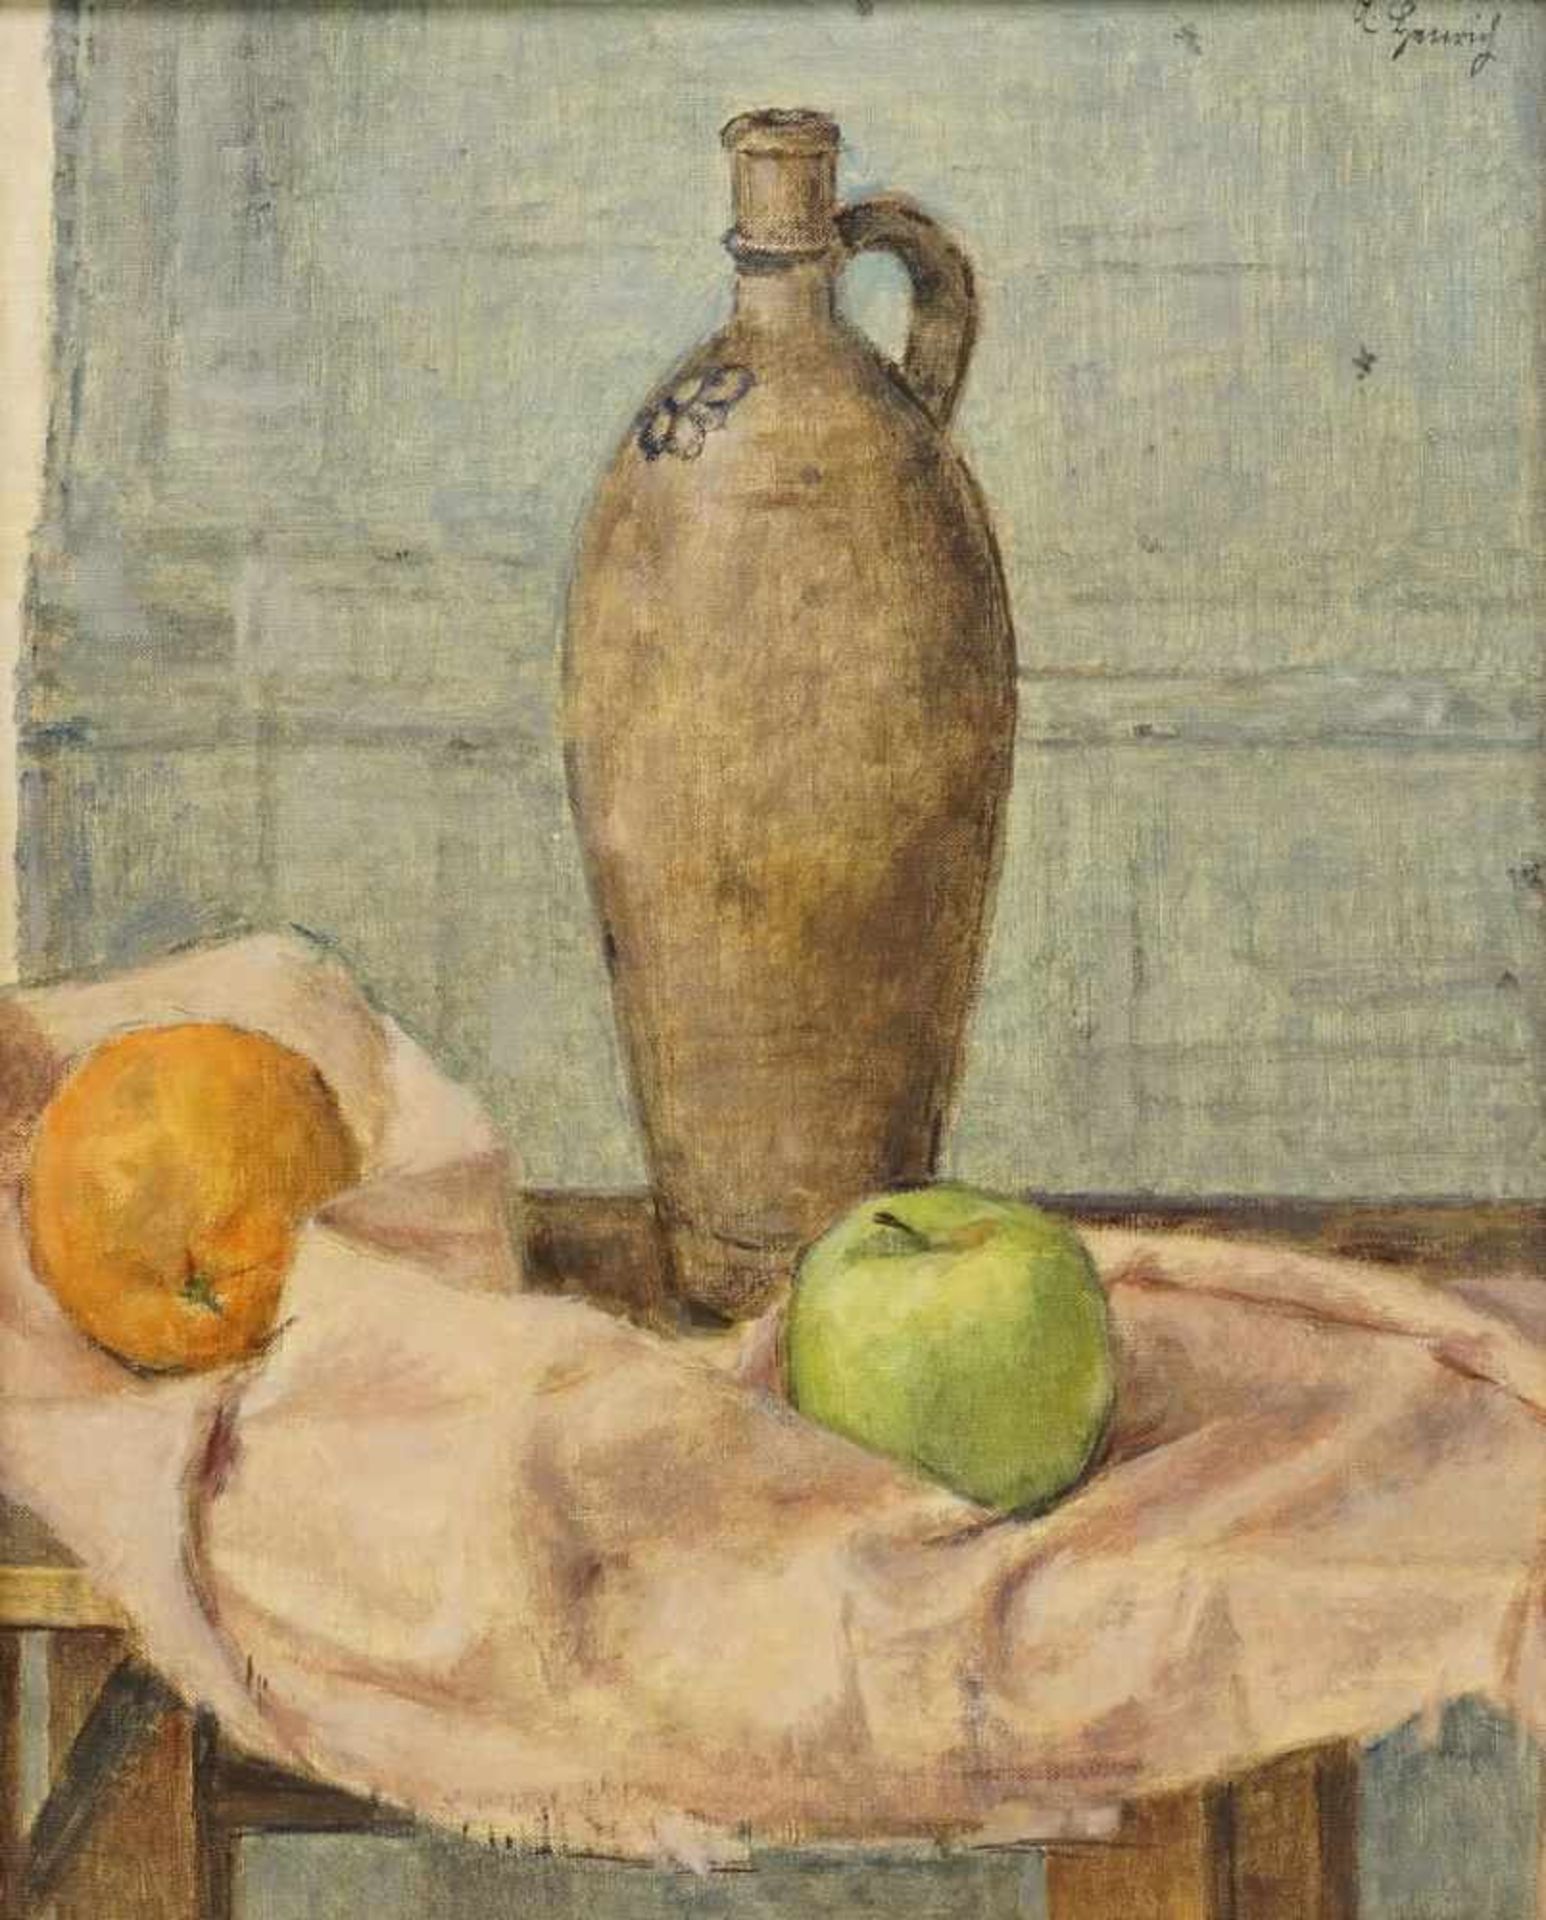 Albert Henrich, "Stillleben mit Krug und Obst"bekannter Düsseldorfer Stilllebenmaler (1899 - 1971